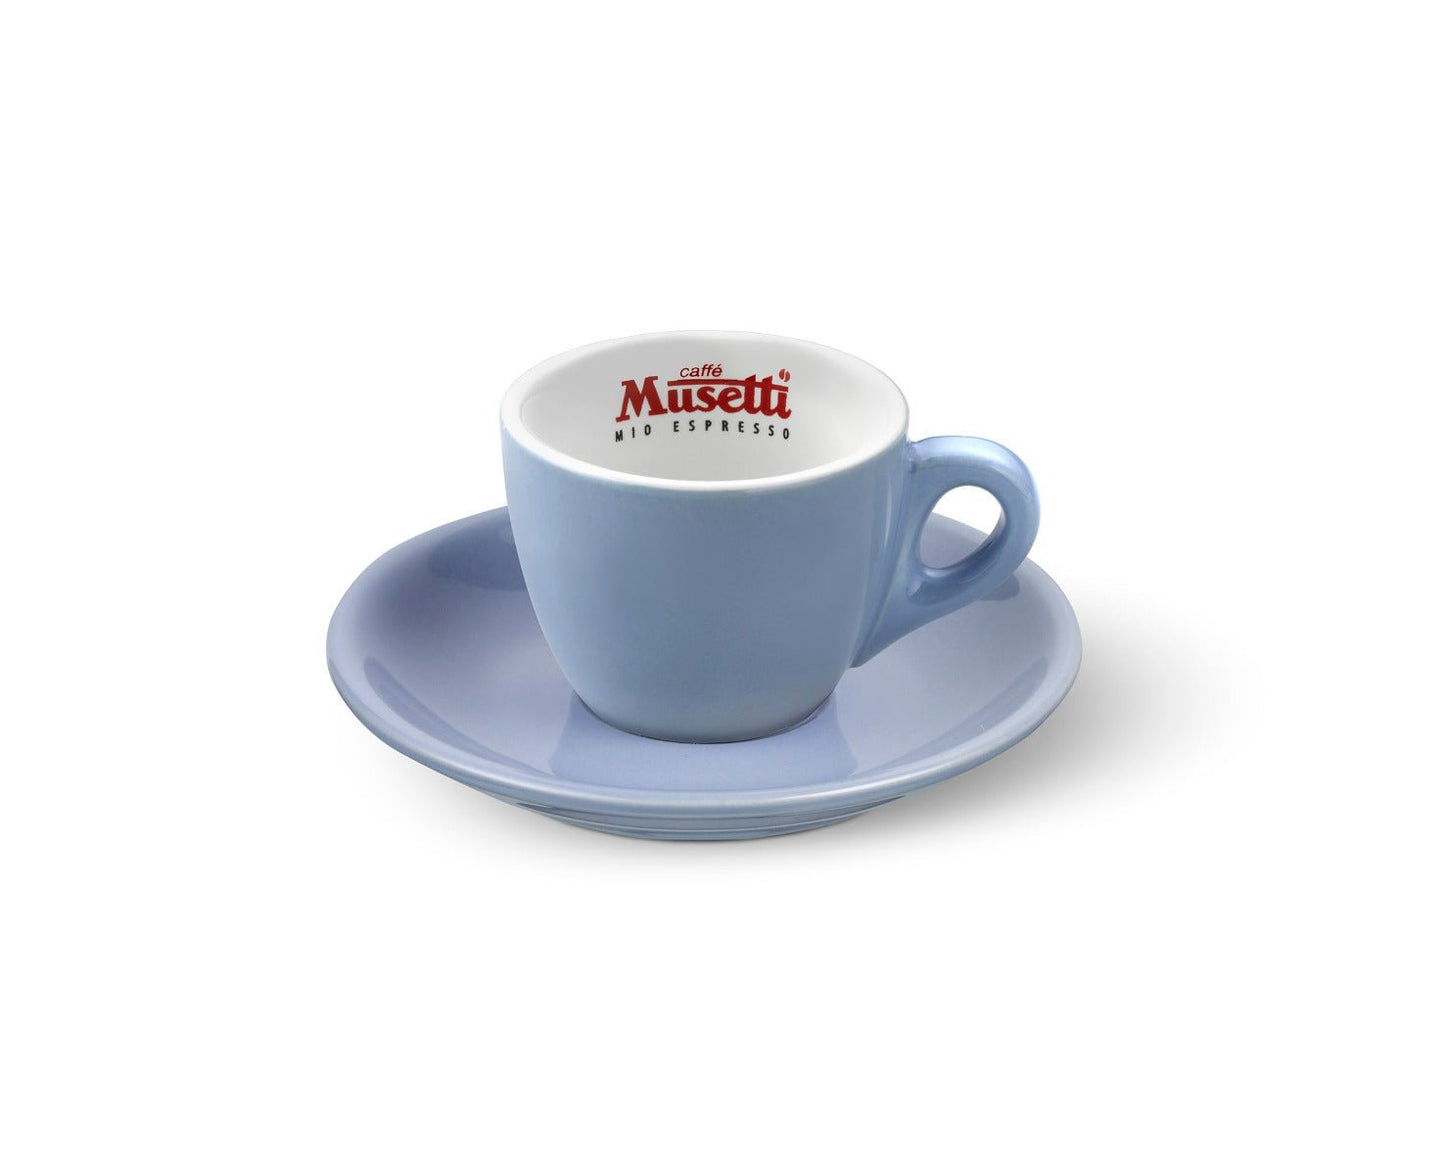 
                  
                    6 tazze caffè colorate con logo Musetti - Musetti shop
                  
                